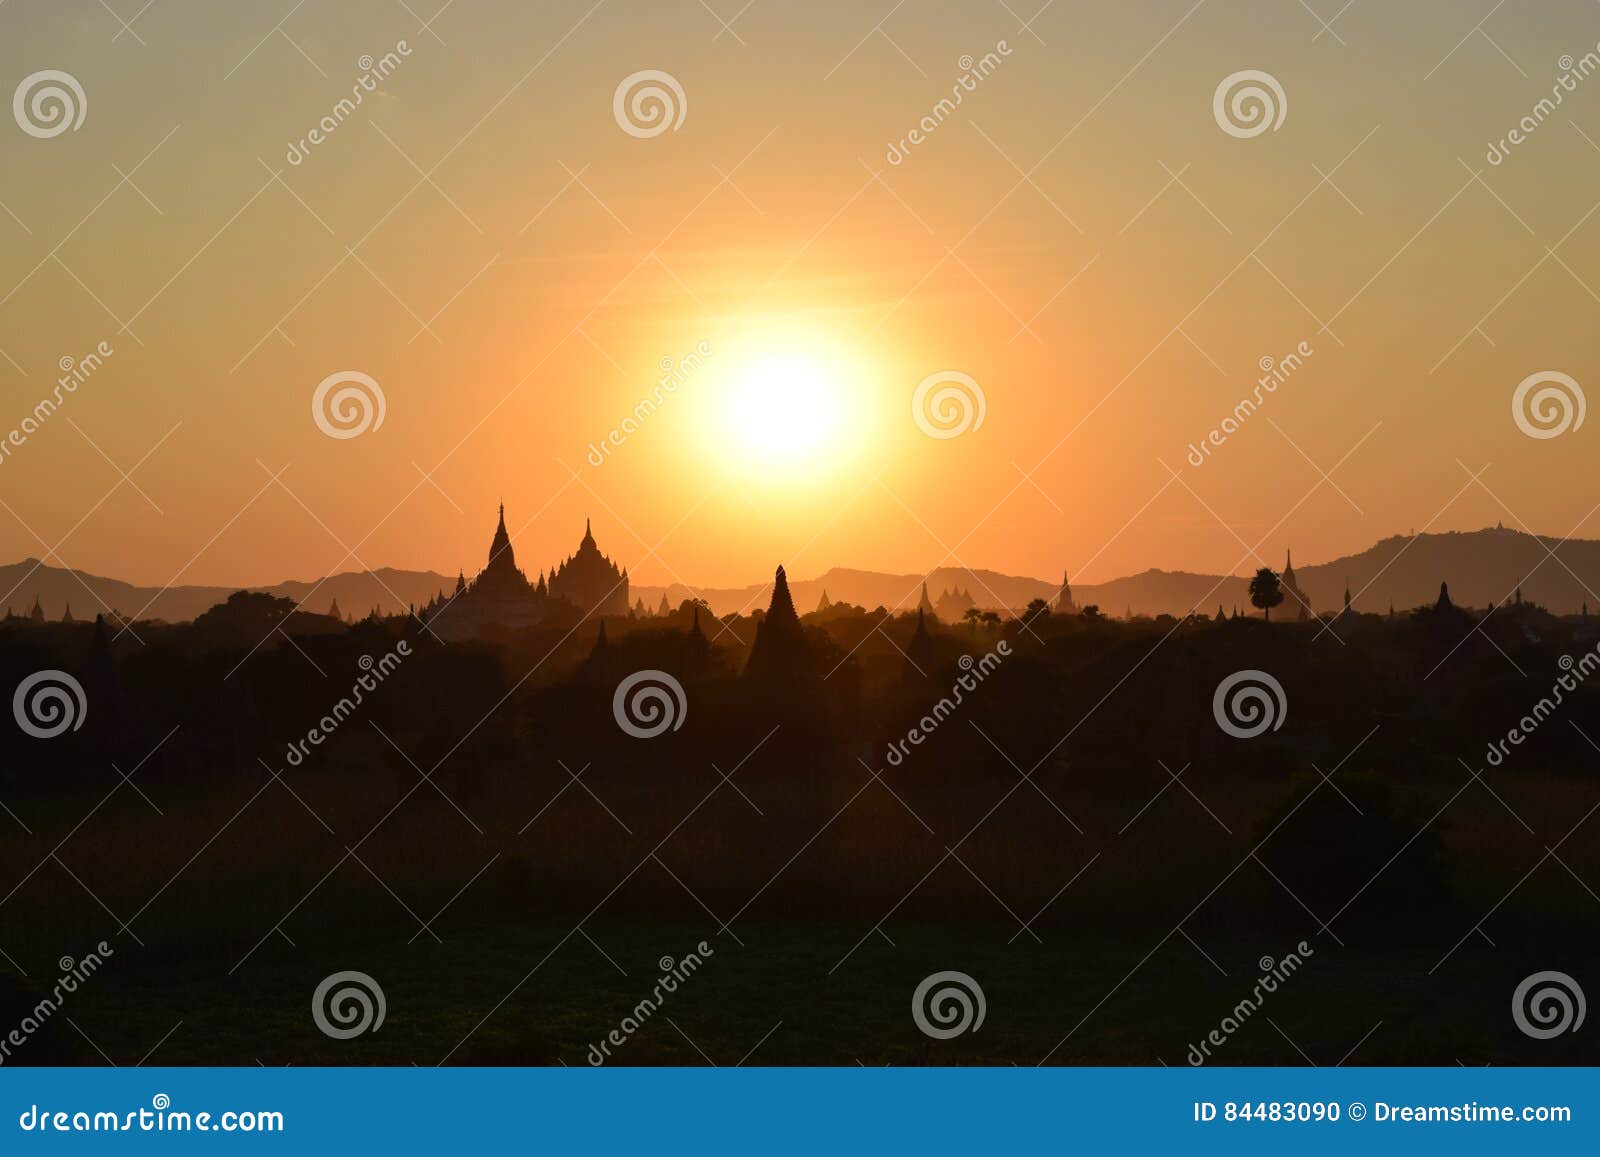 sunset in bagan temples, myanmar